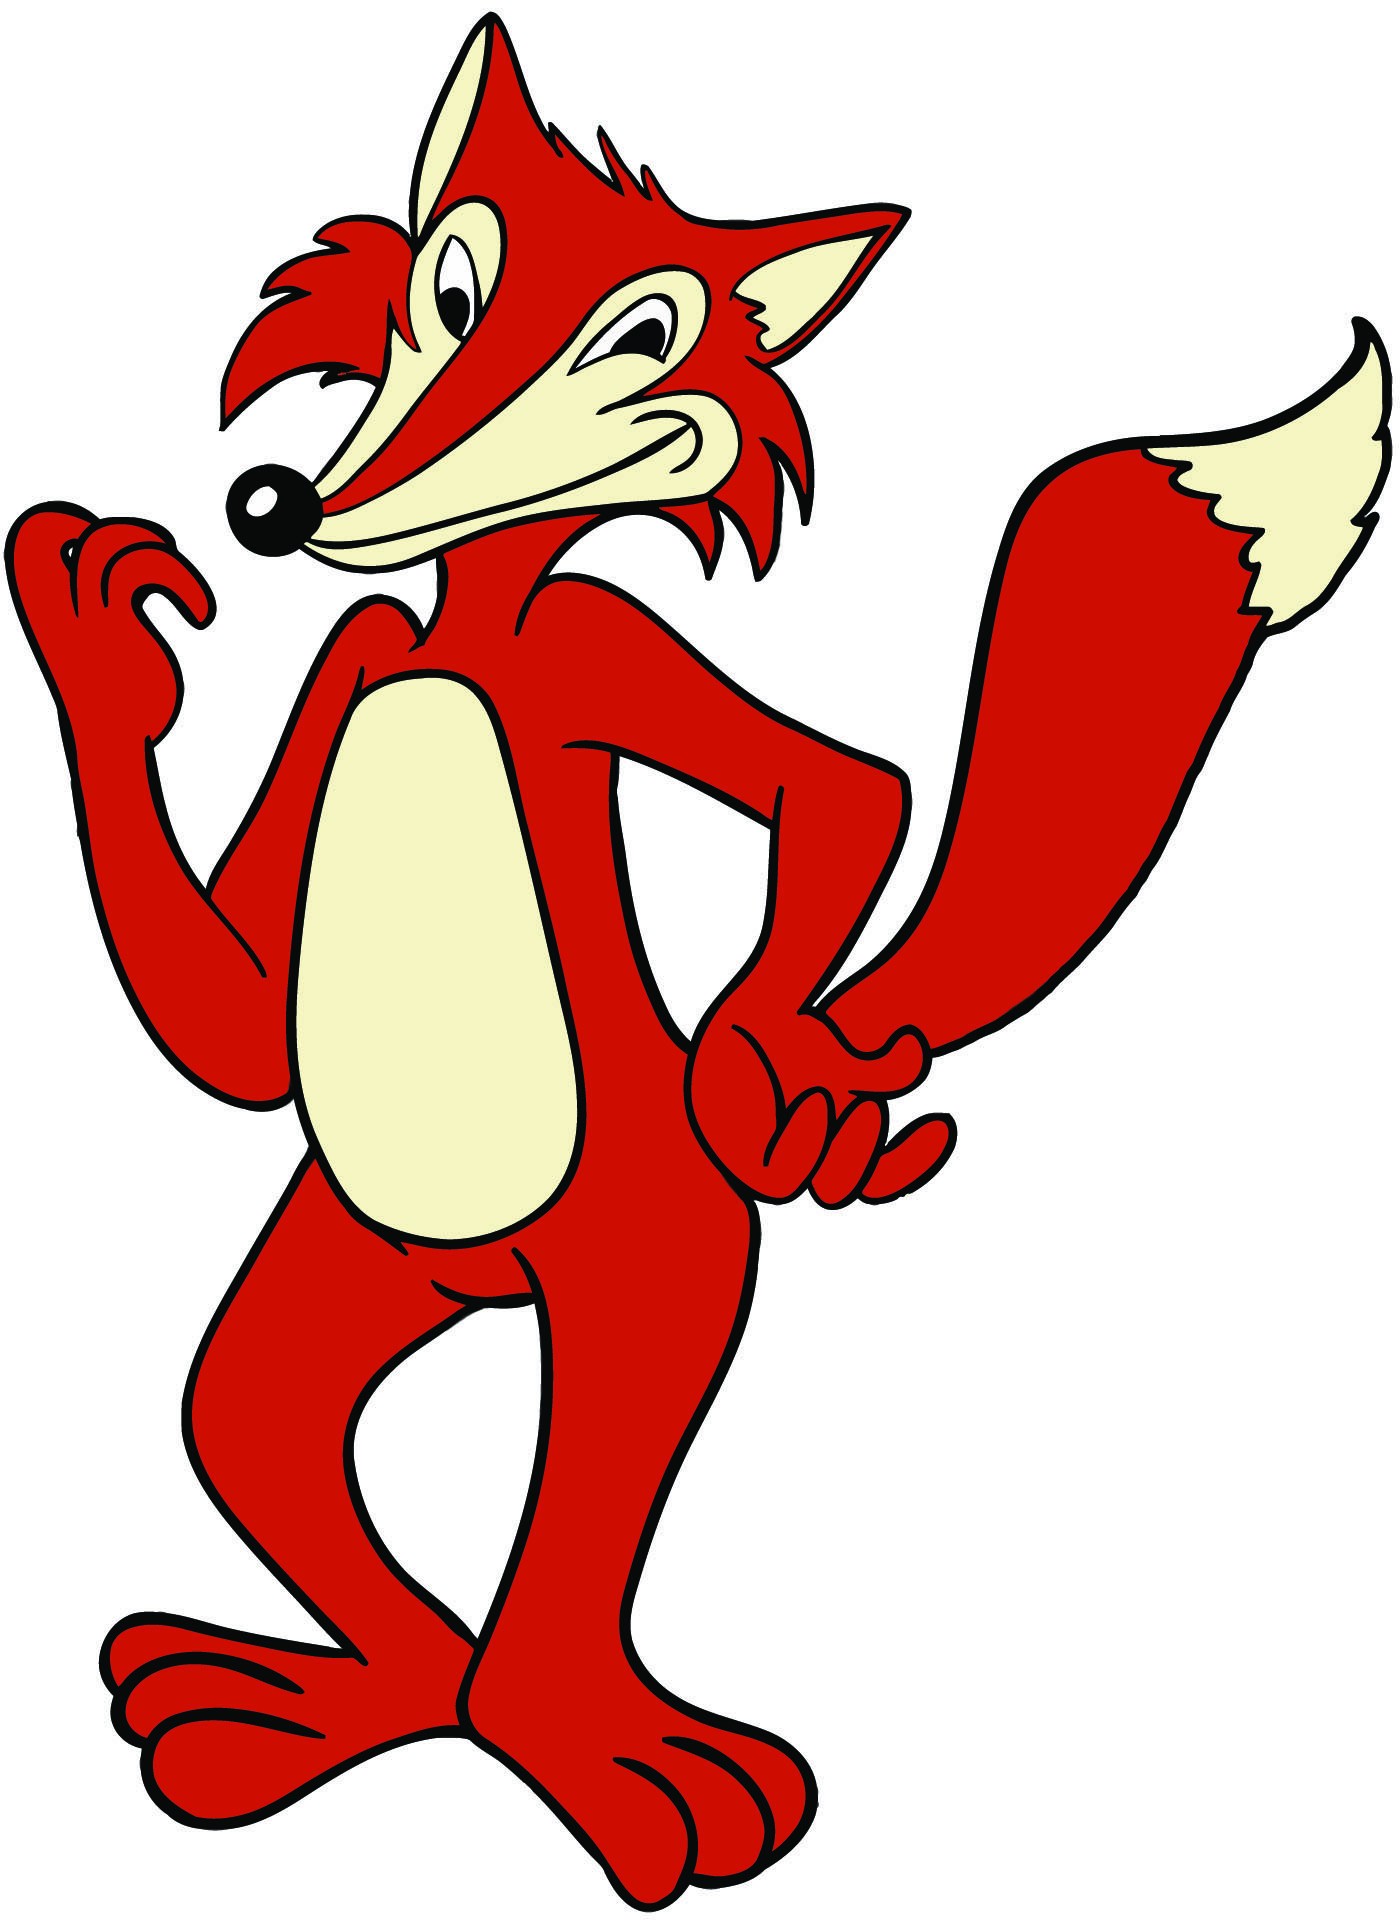 Rode cartoon fox